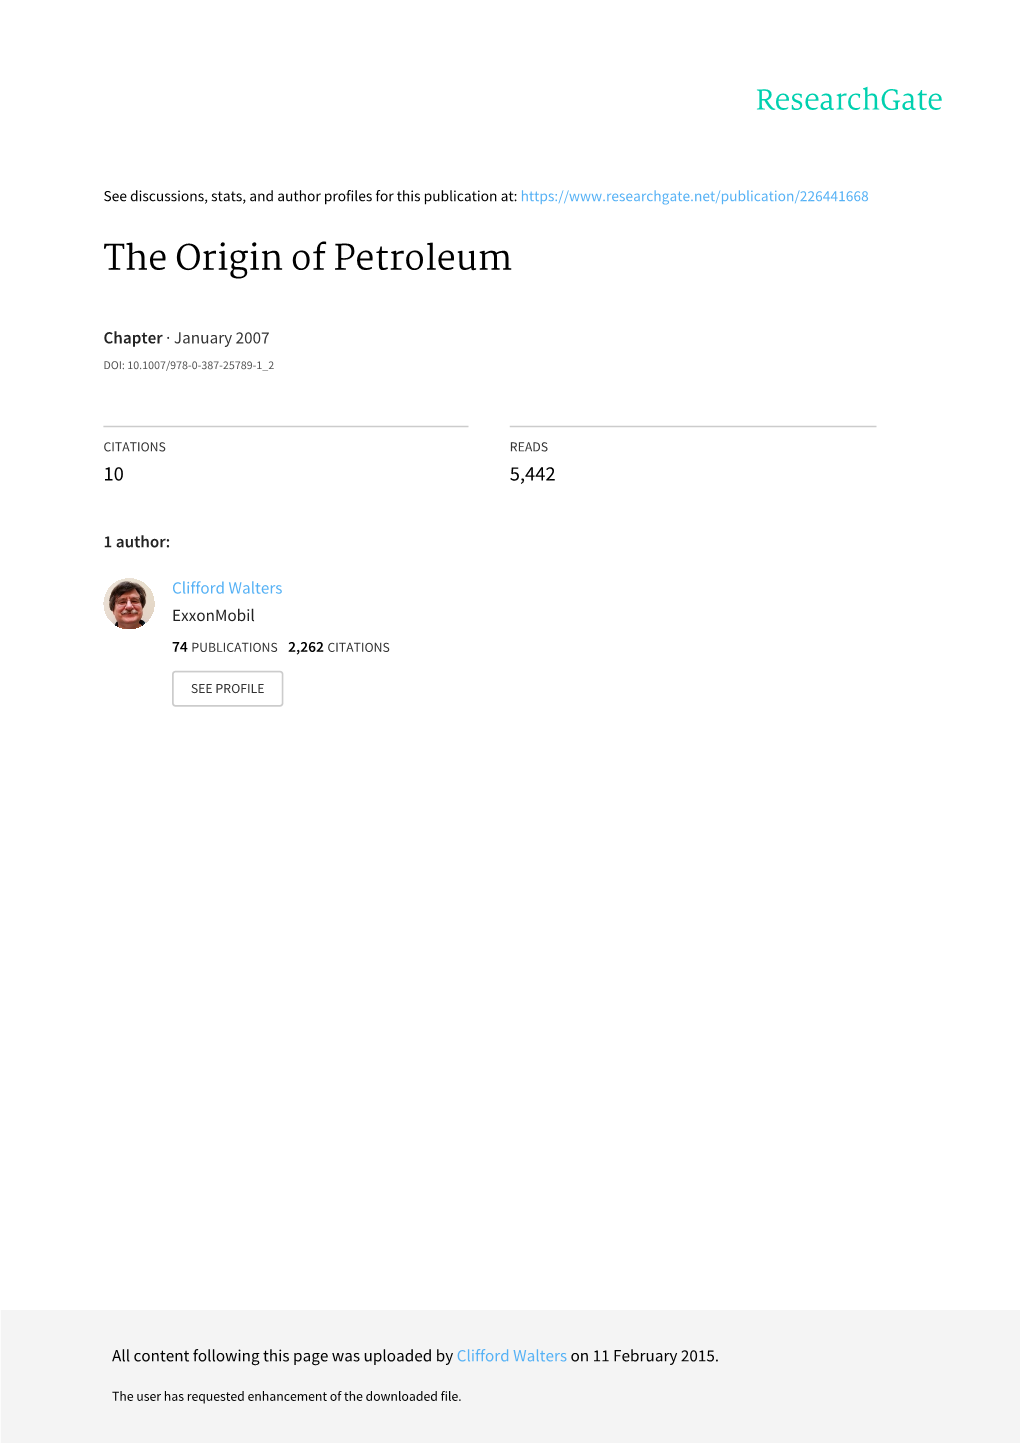 The Origin of Petroleum